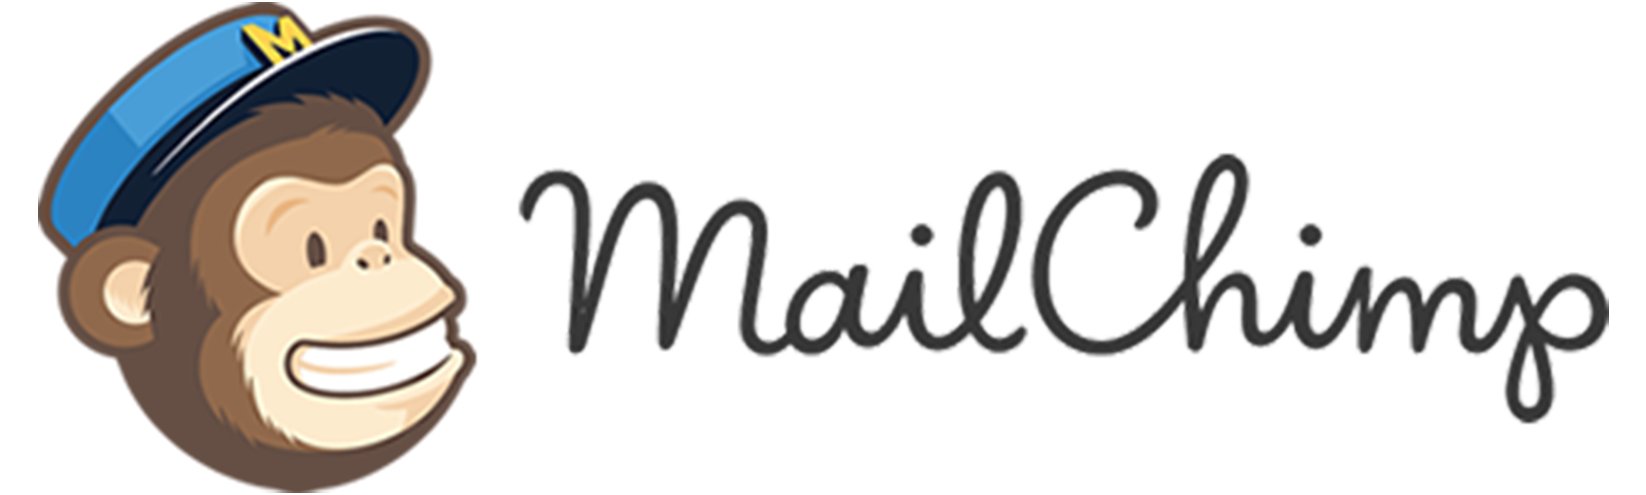 Logo of Mailchimp